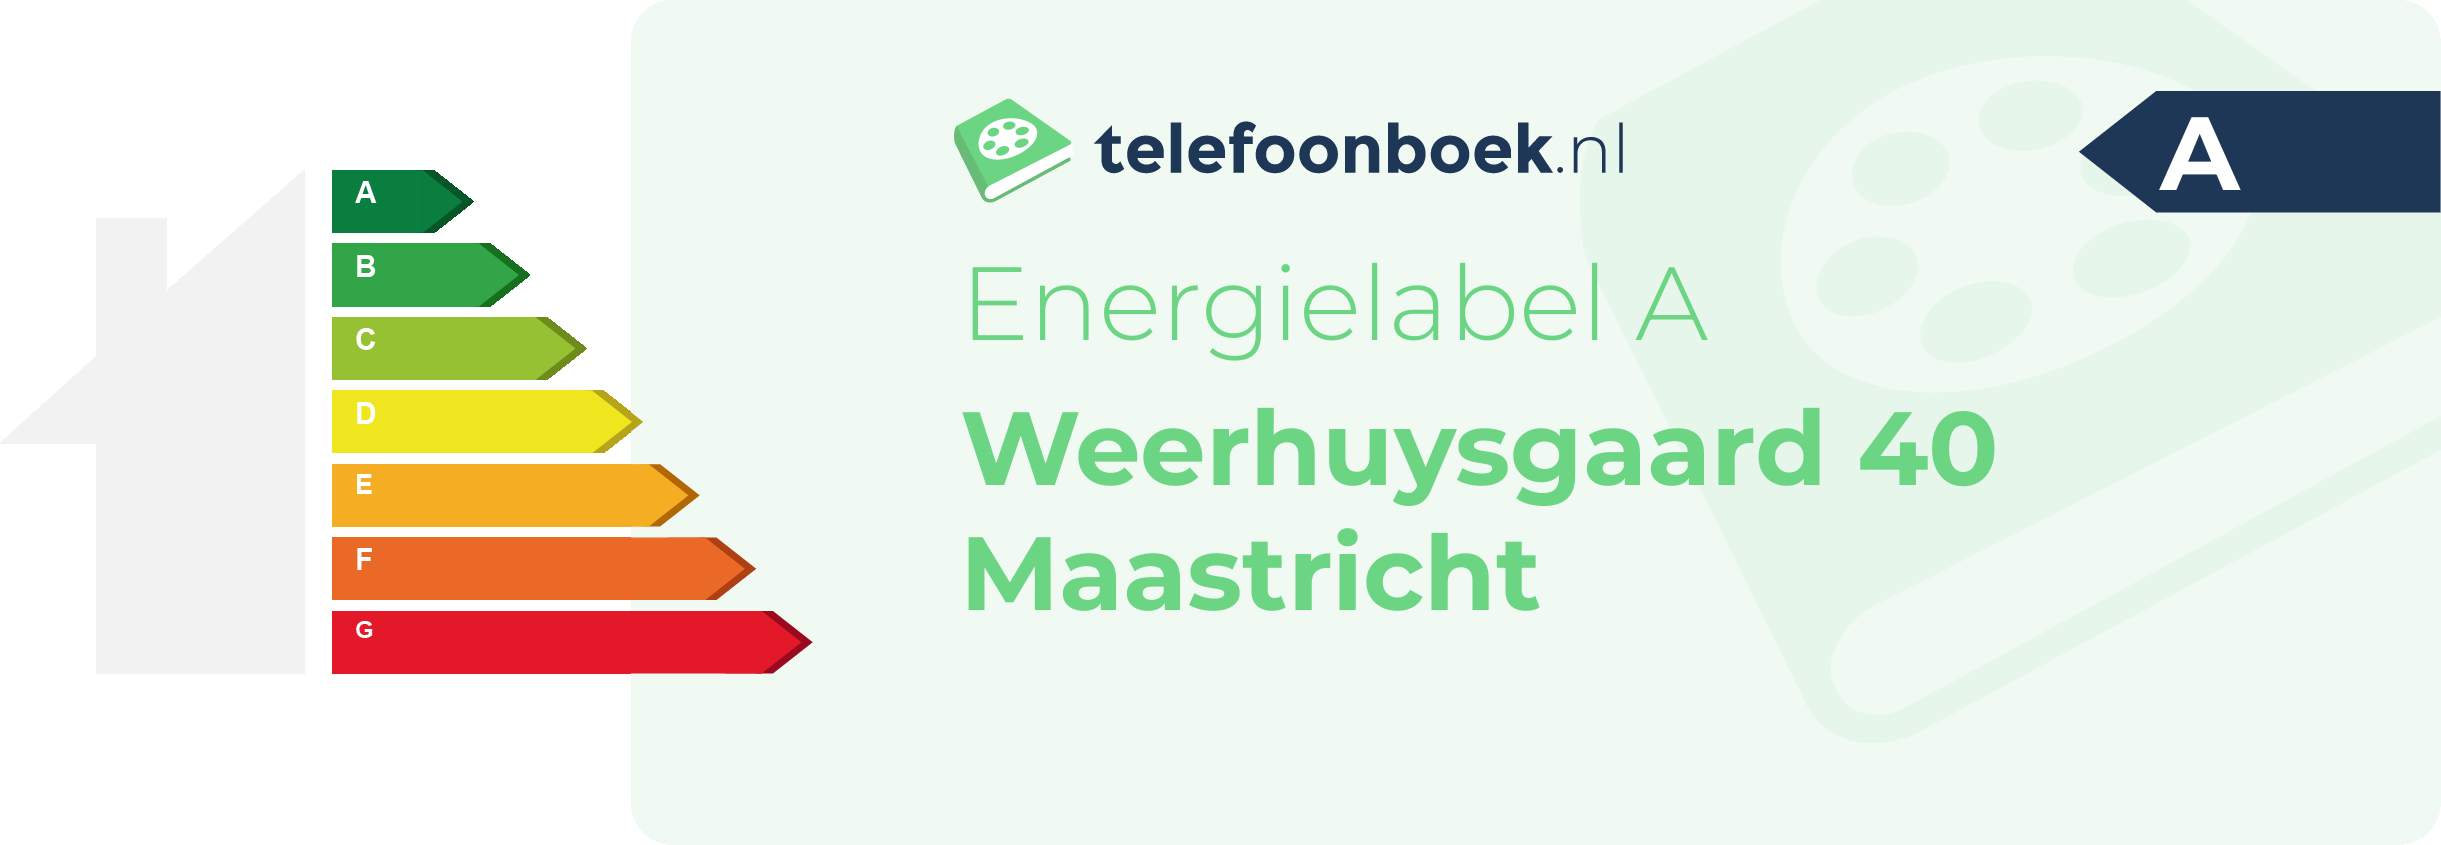 Energielabel Weerhuysgaard 40 Maastricht